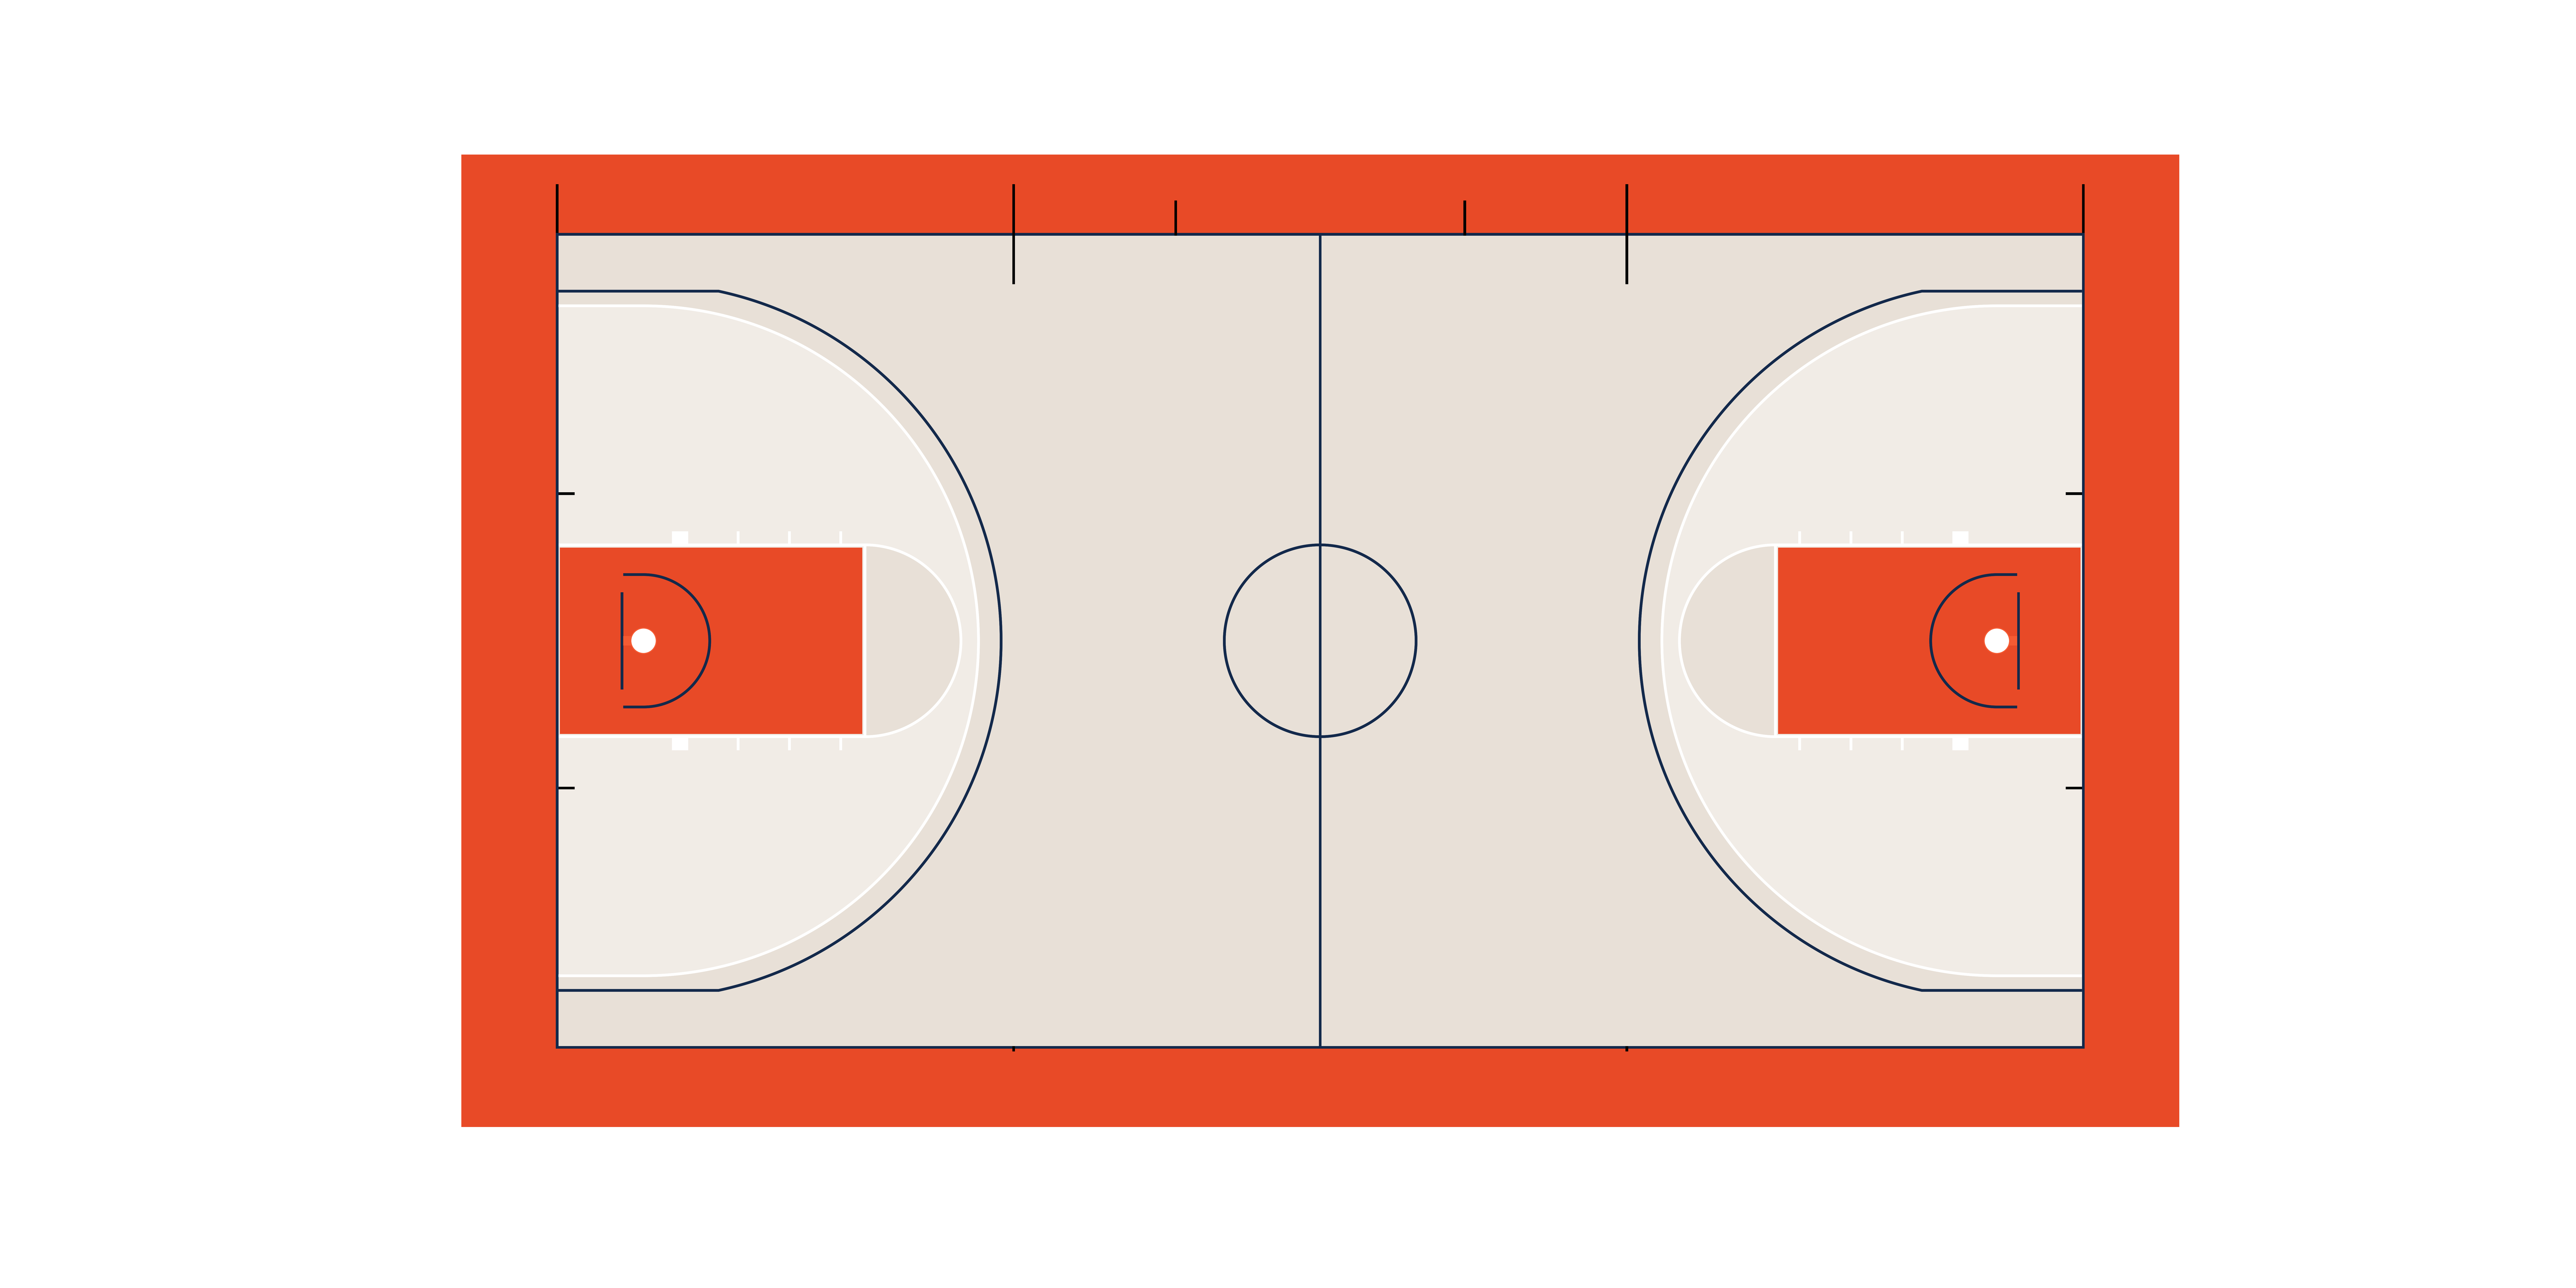 sportypy-rendered Illini basketball court (sans logos/branding)